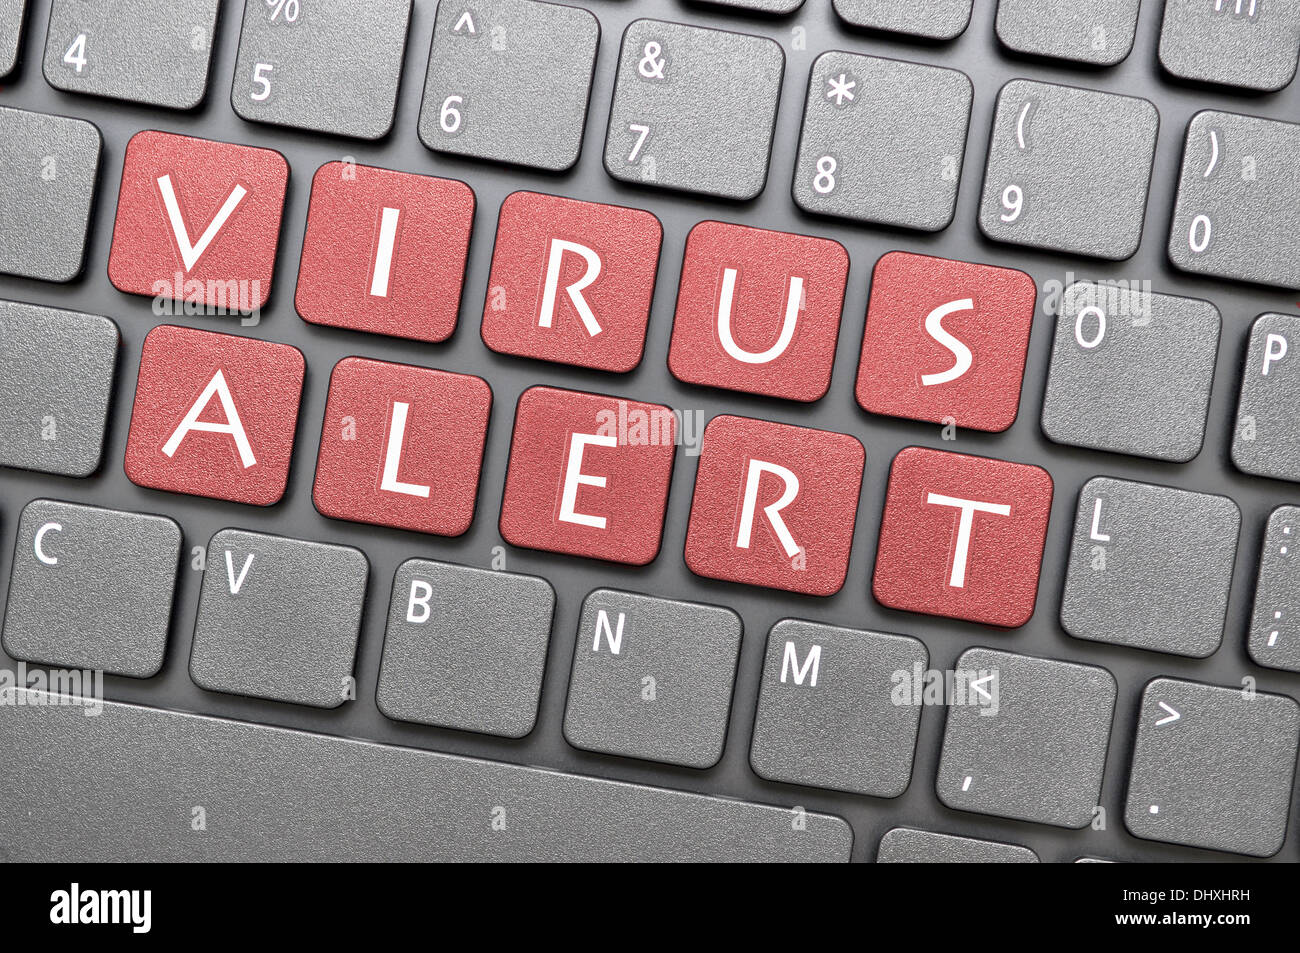 Virus alert key on keyboard Stock Photo